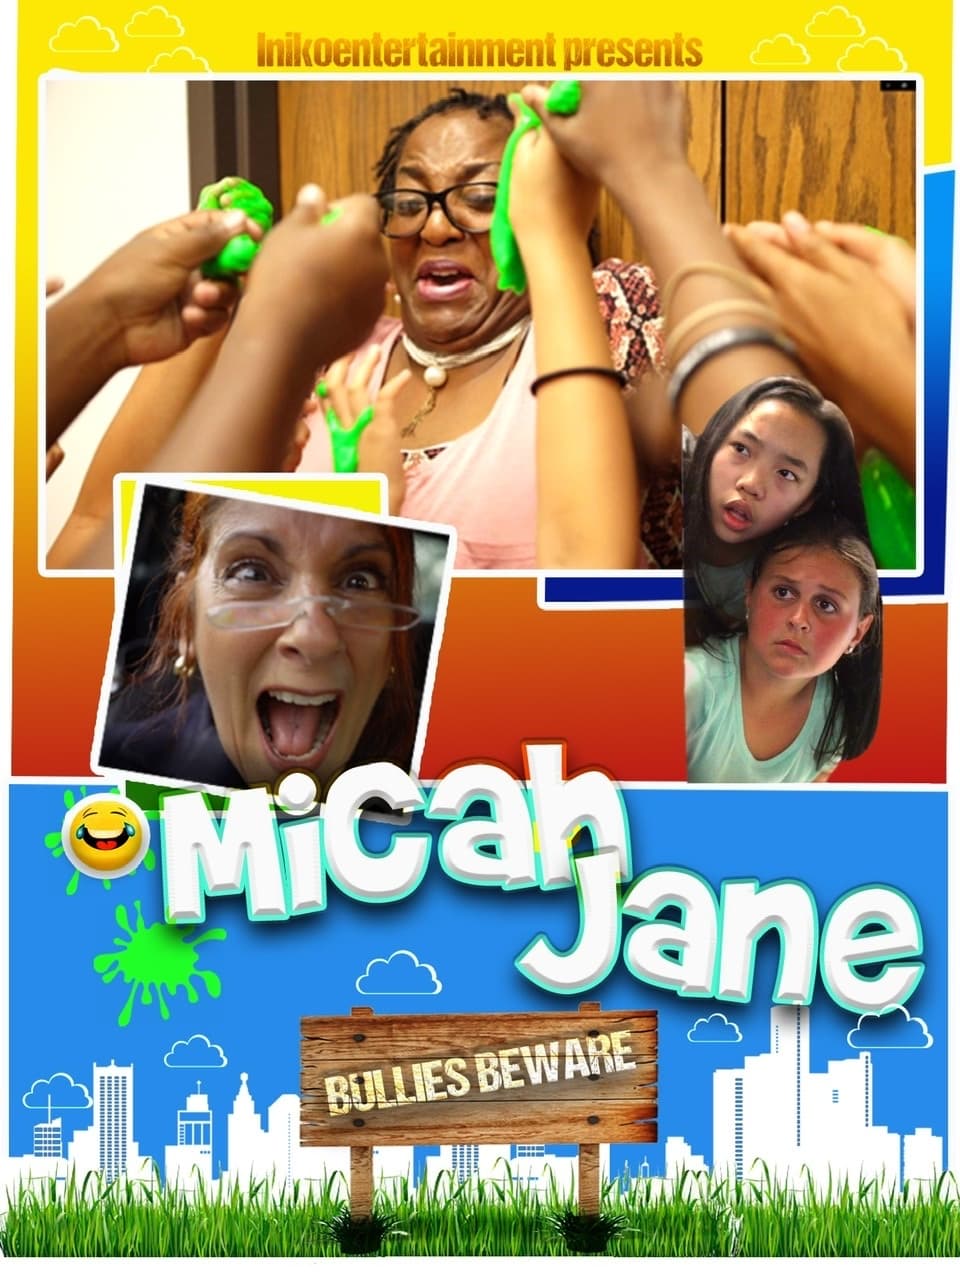 Micah and Jane Bullies Beware